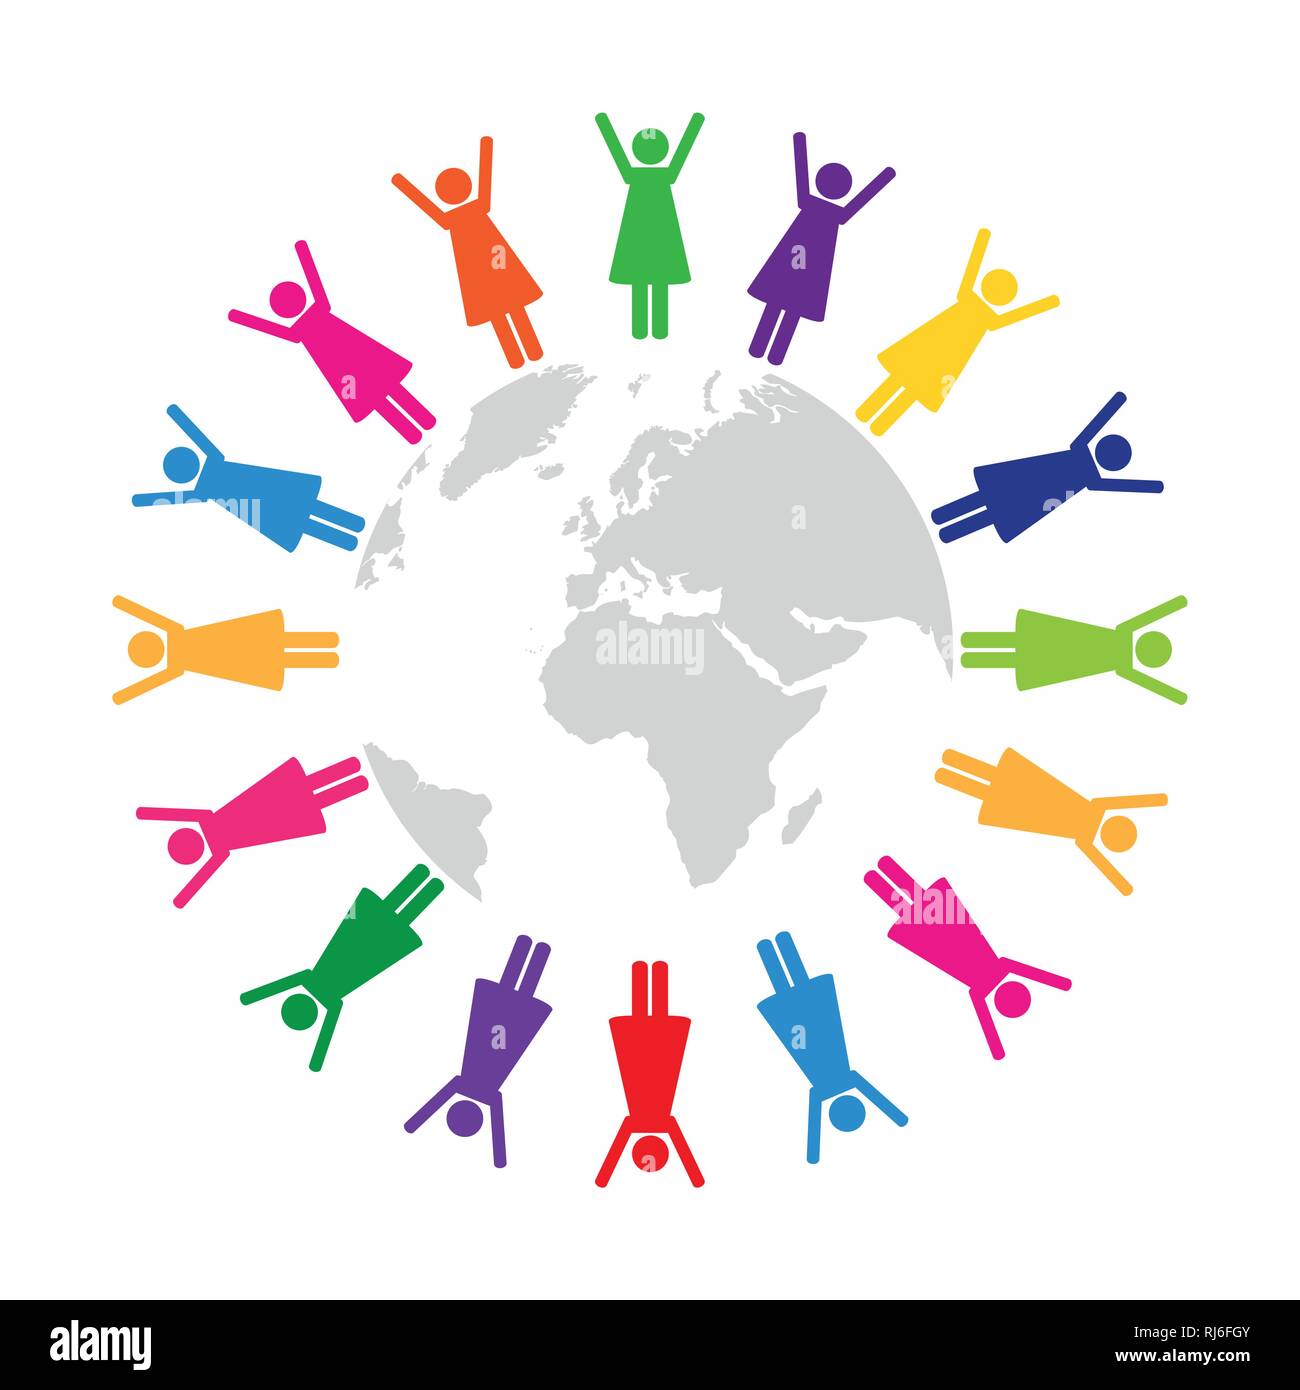 Frauen in verschiedenen Farben rund um die Welt das Piktogramm Vektor-illustration EPS 10. Stock Vektor